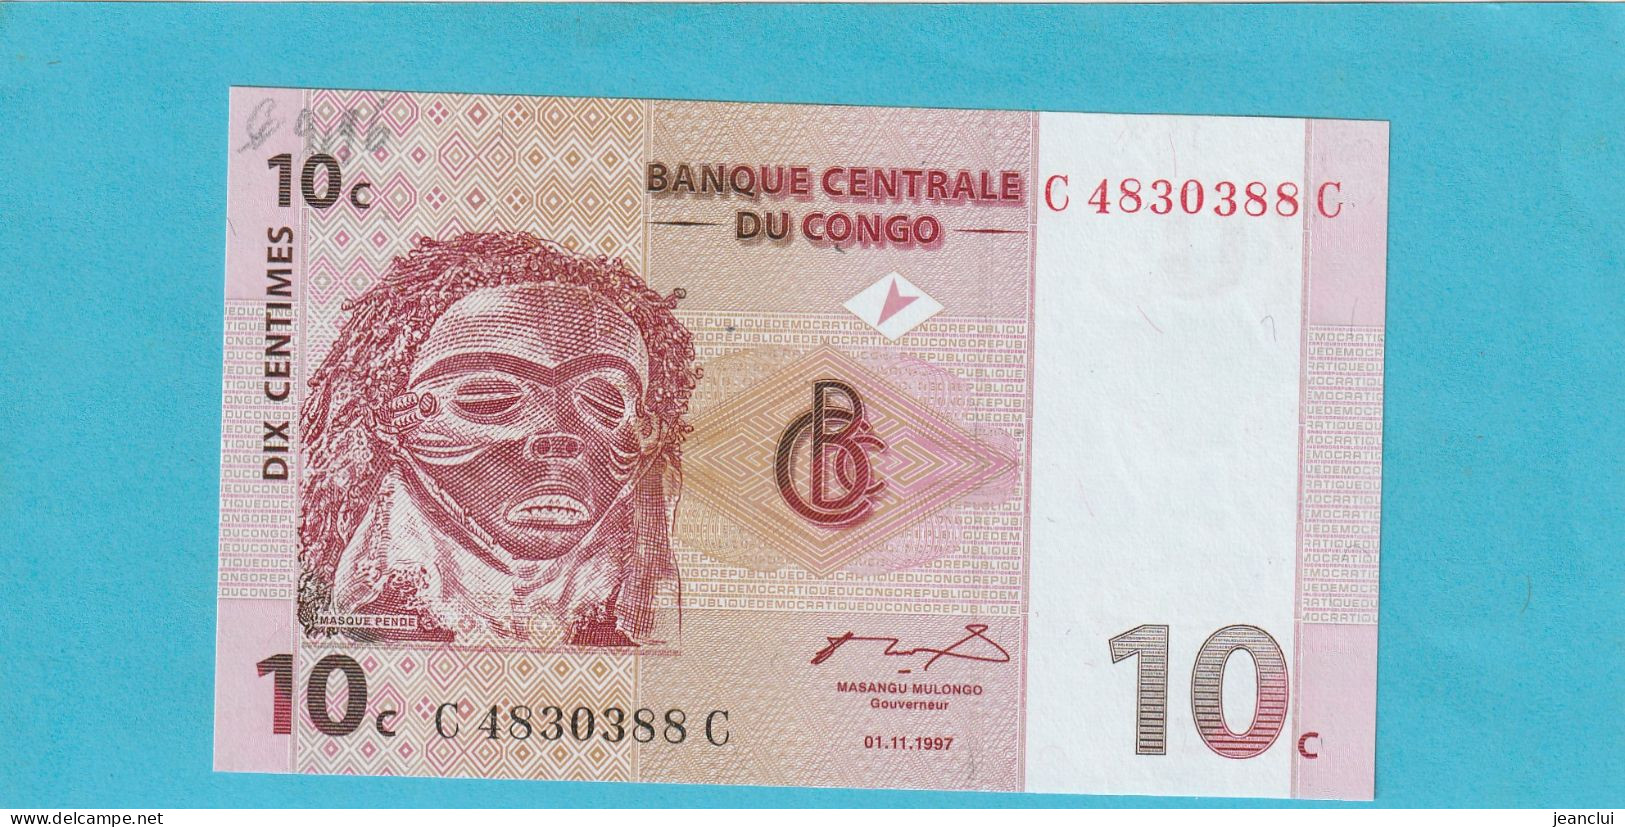 BANQUE CENTRALE DU CONGO  .  10 CENTIMES  .  01-11-1997  .  N°  C 4830388 C   .  BILLET EN TRES BEL ETAT  .  2 SCANNES - Democratic Republic Of The Congo & Zaire